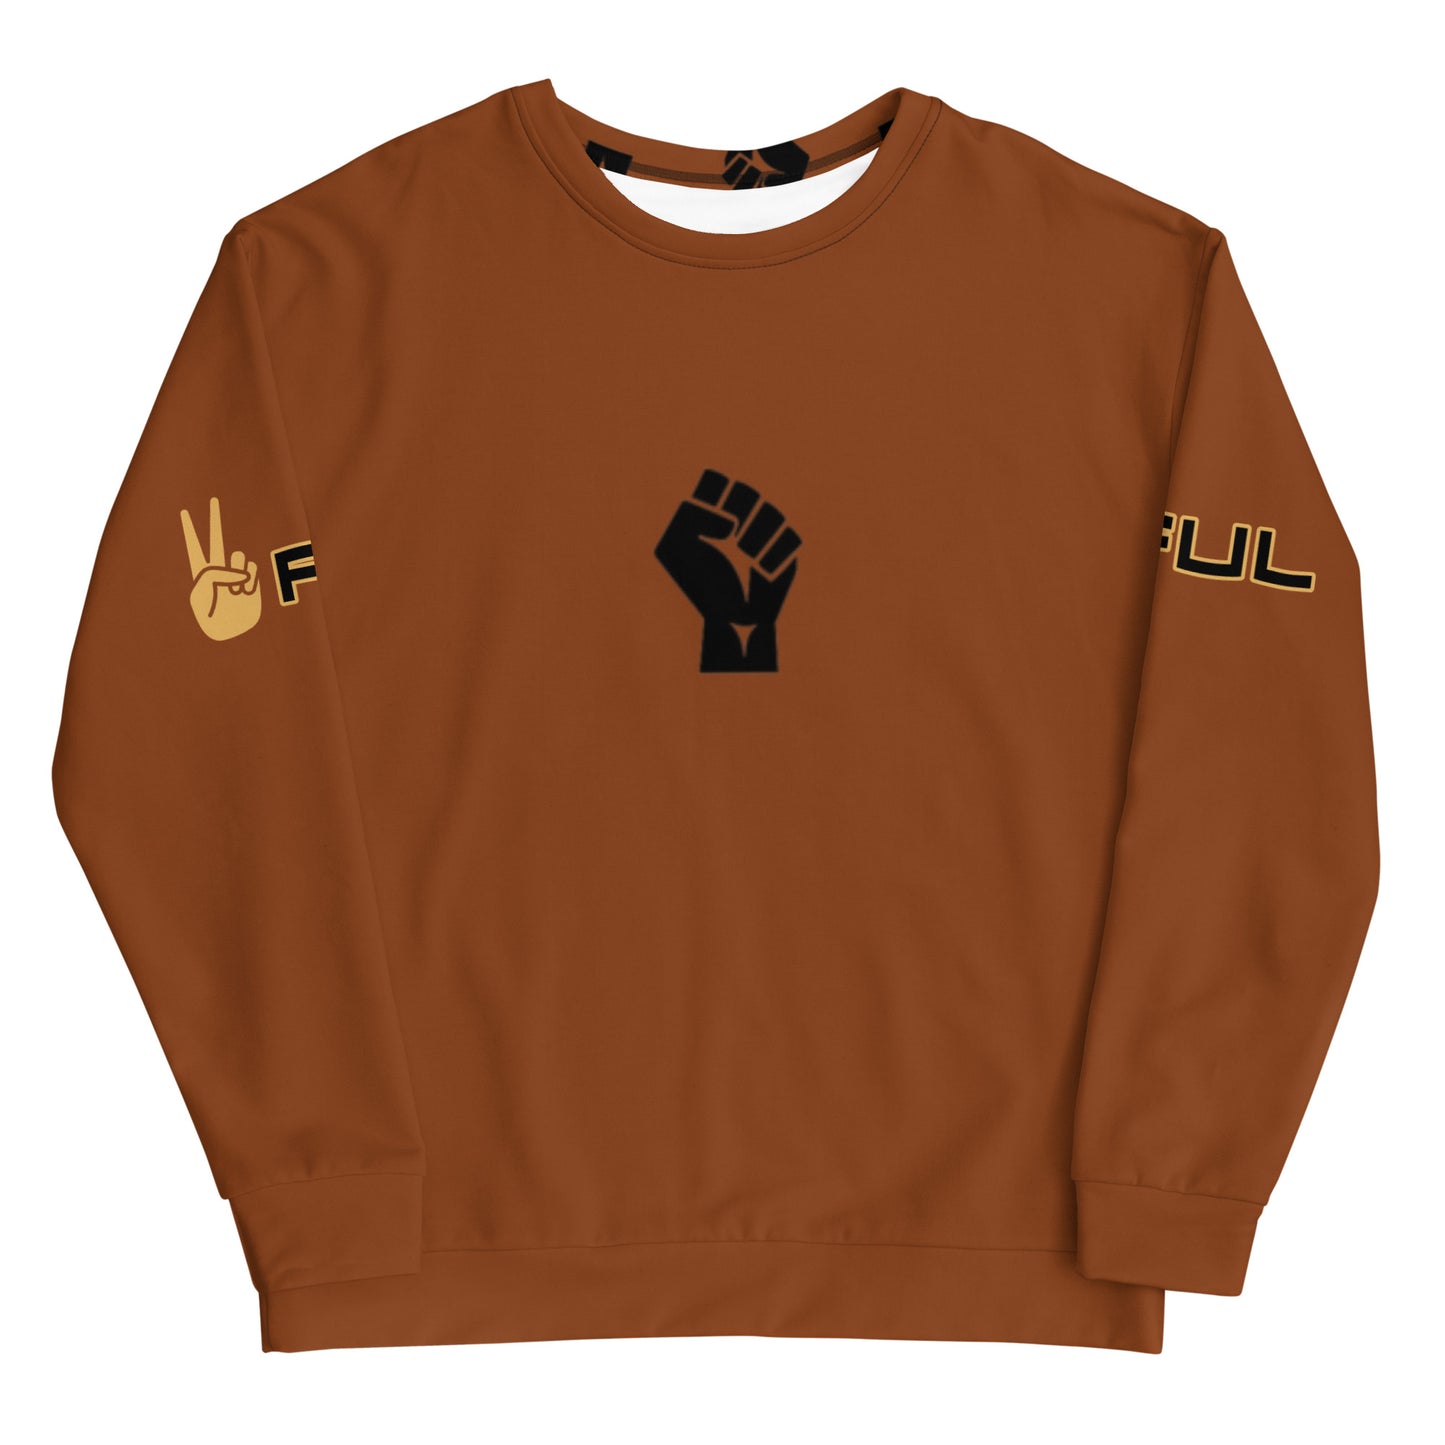 Unisex Peaceful Black Fist Unity Brown Sweatshirt